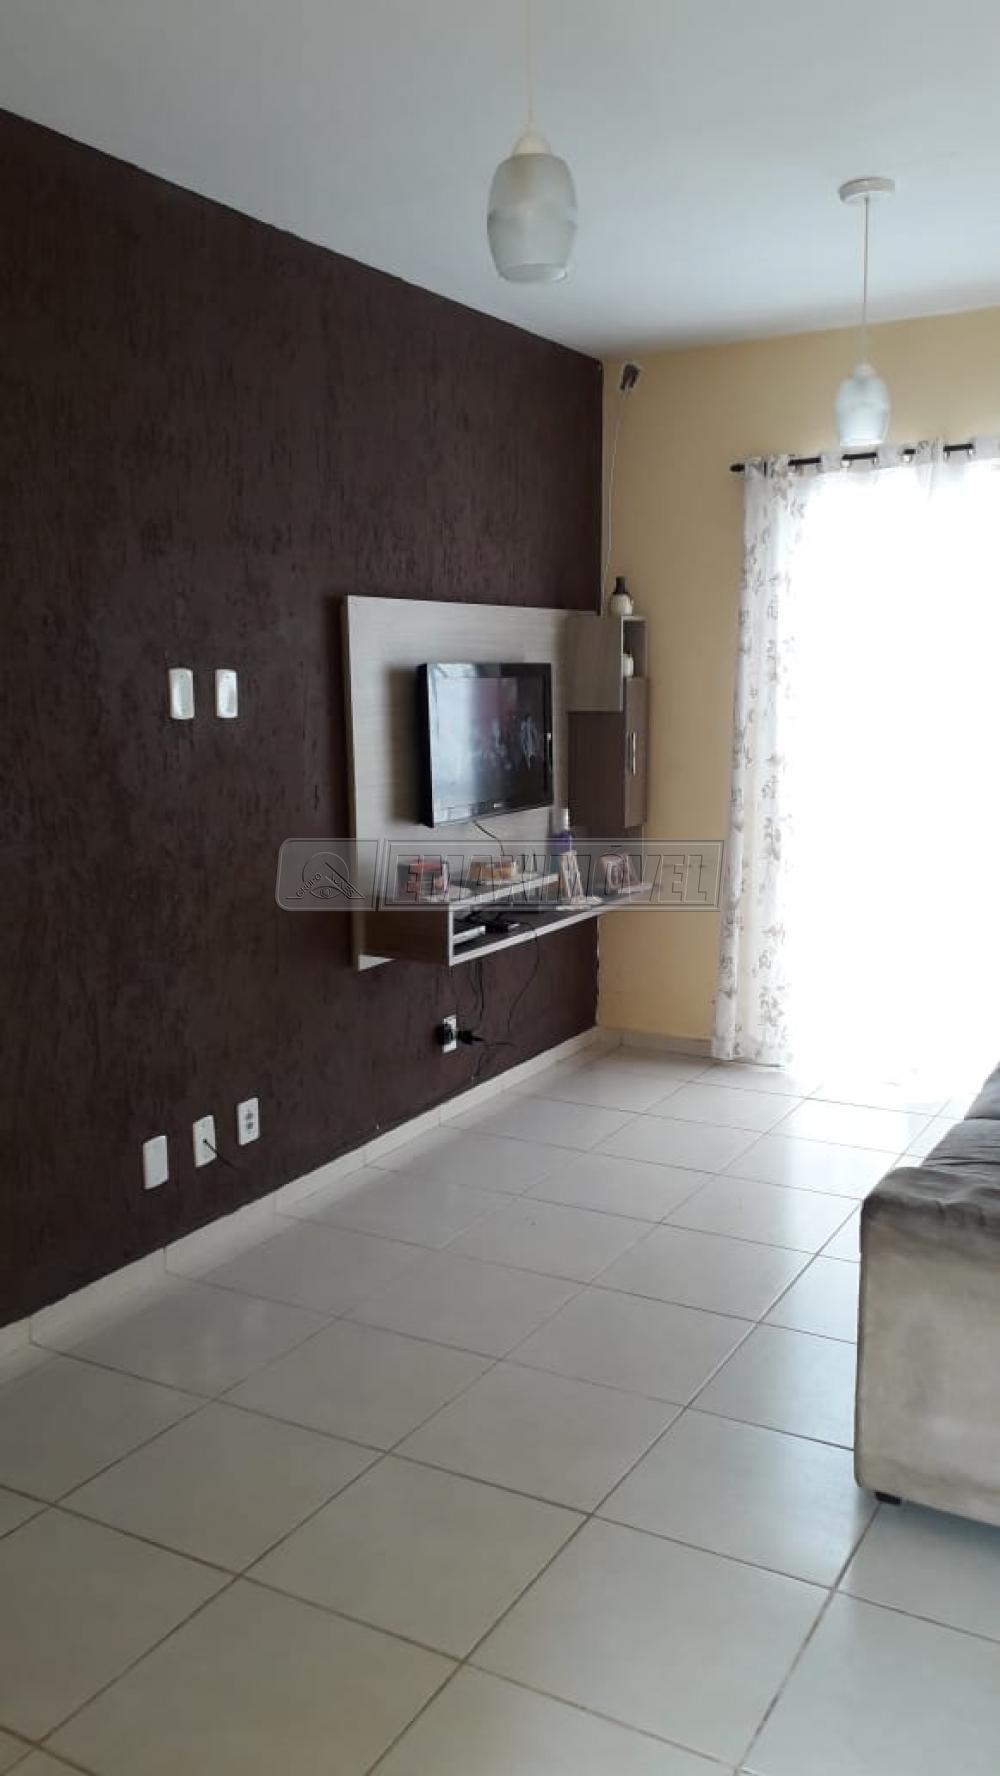 Comprar Casa / em Condomínios em Sorocaba R$ 270.000,00 - Foto 3